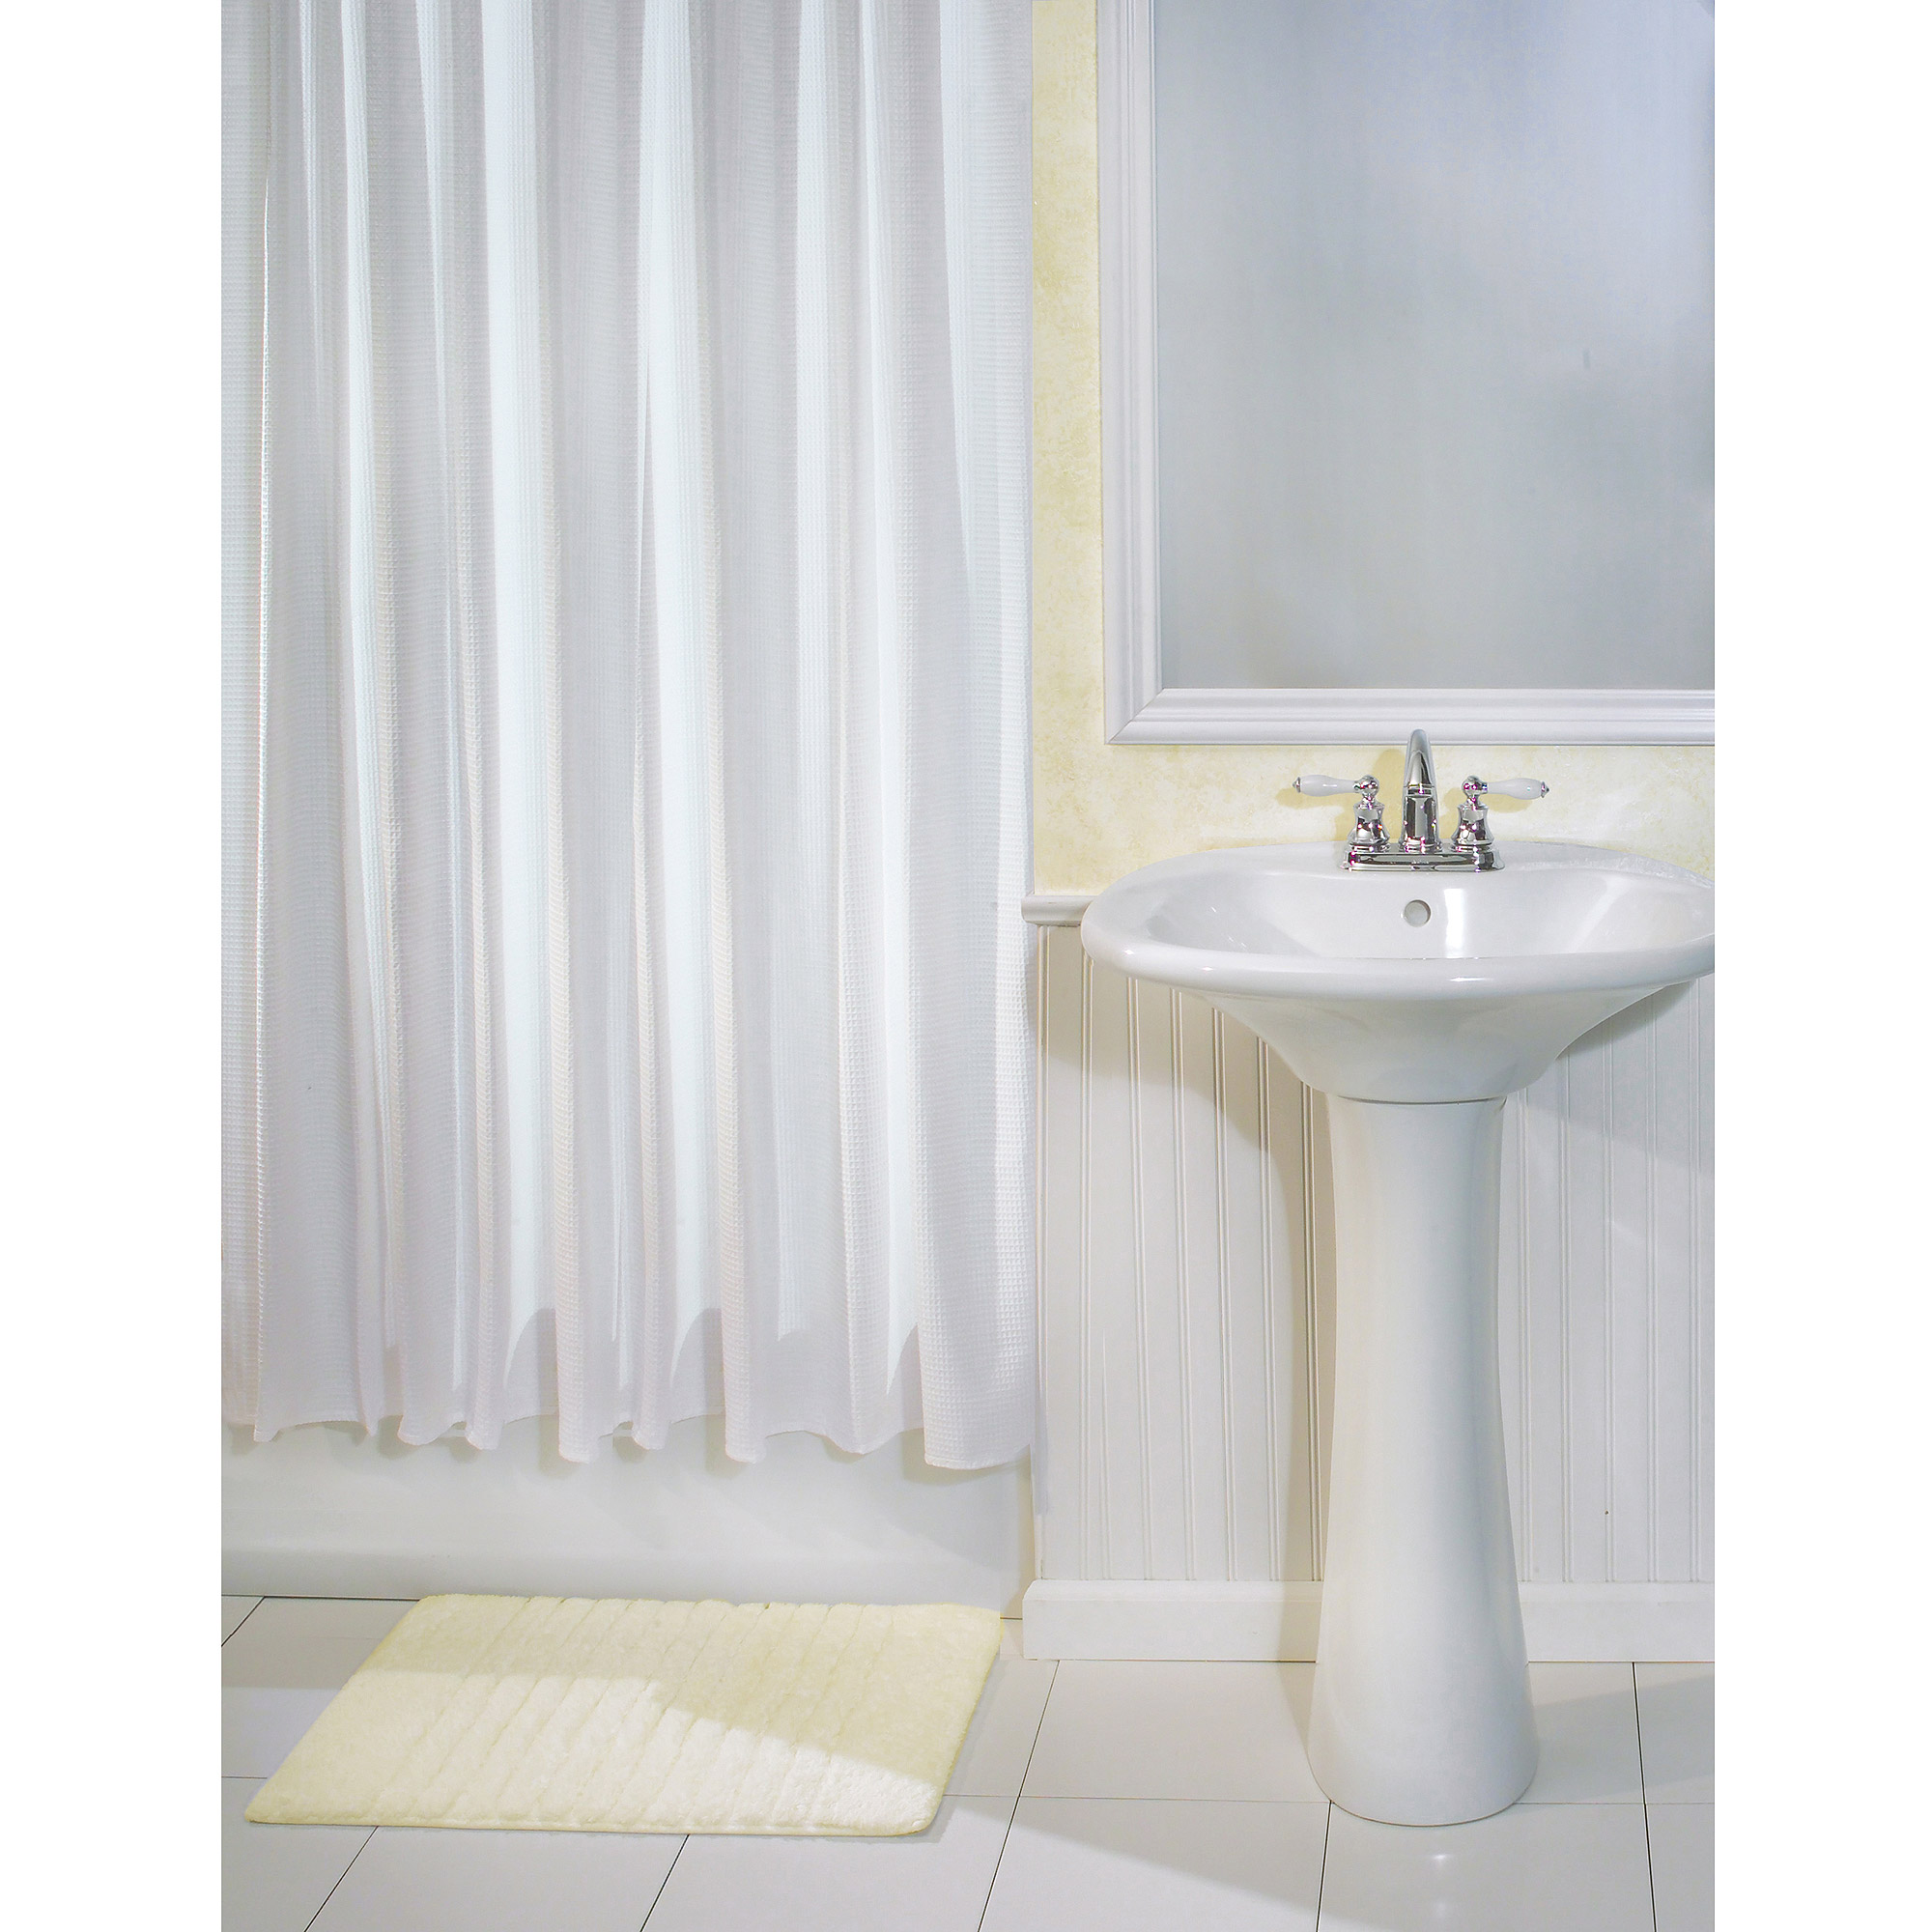 InterDesign York Fabric Shower Curtain, Standard, 72" x 72", White - image 1 of 6